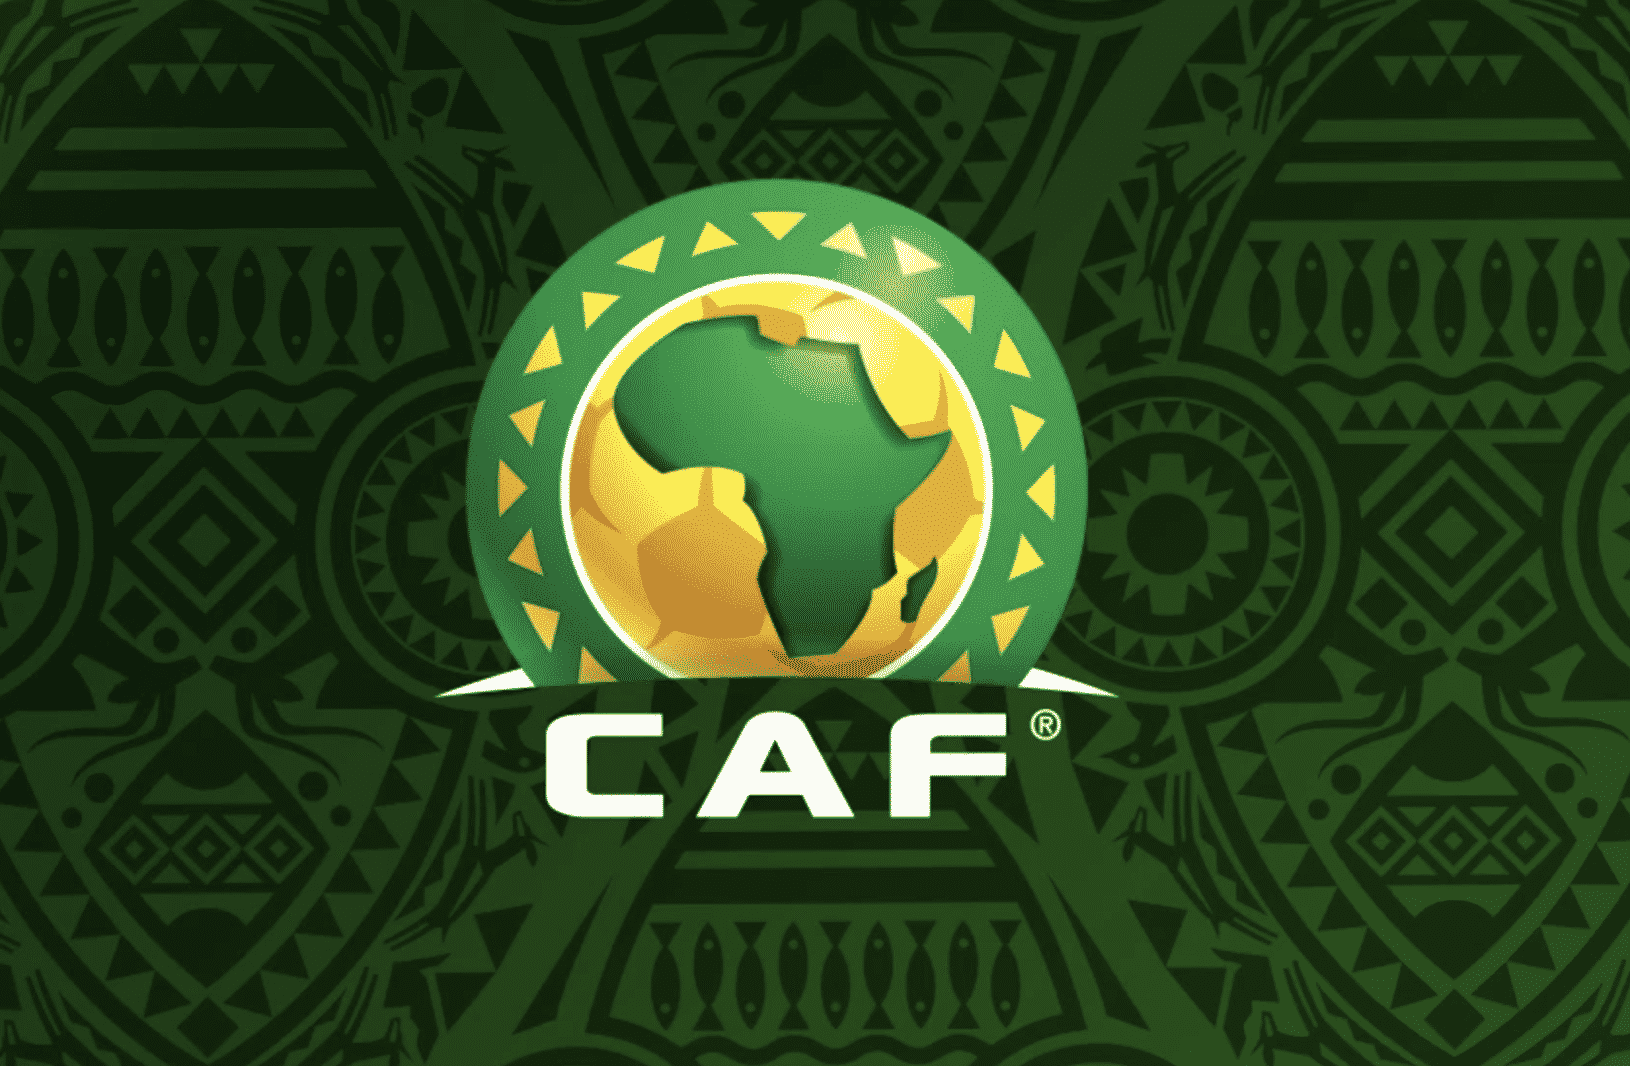 La CAF annonce les dates des tirages de la CAN Féminine 2022, du CHAN 2022 et de la CAN 2023